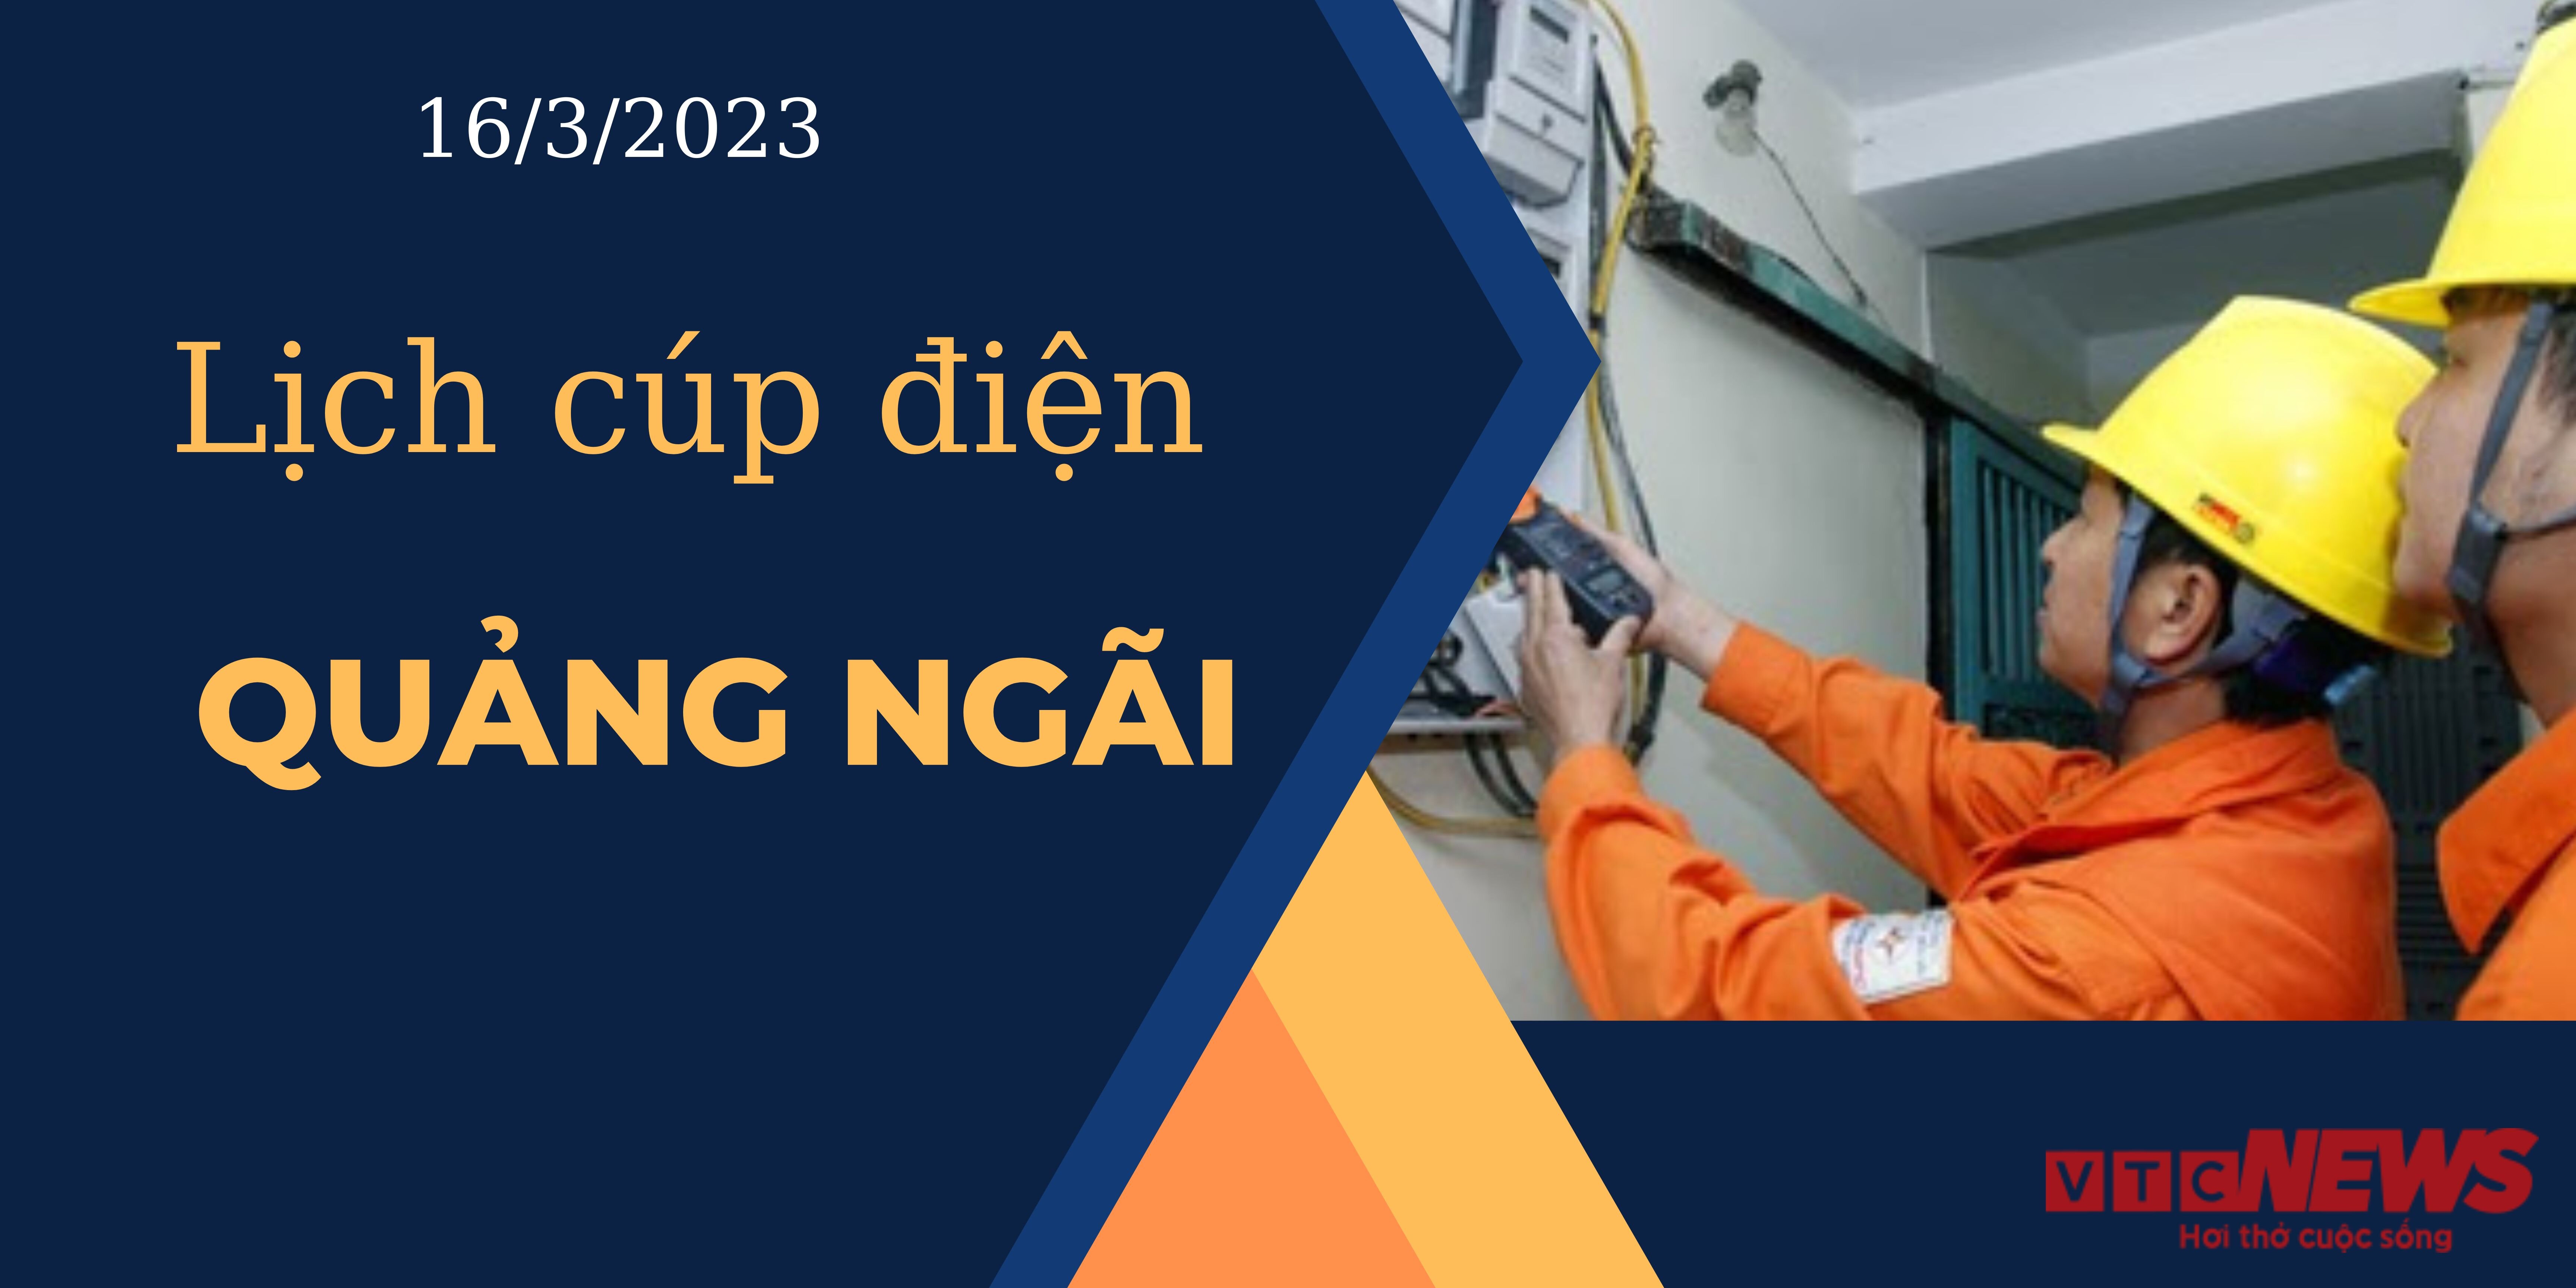 Lịch cúp điện hôm nay ngày 16/3/2023 tại Quảng Ngãi  - 1